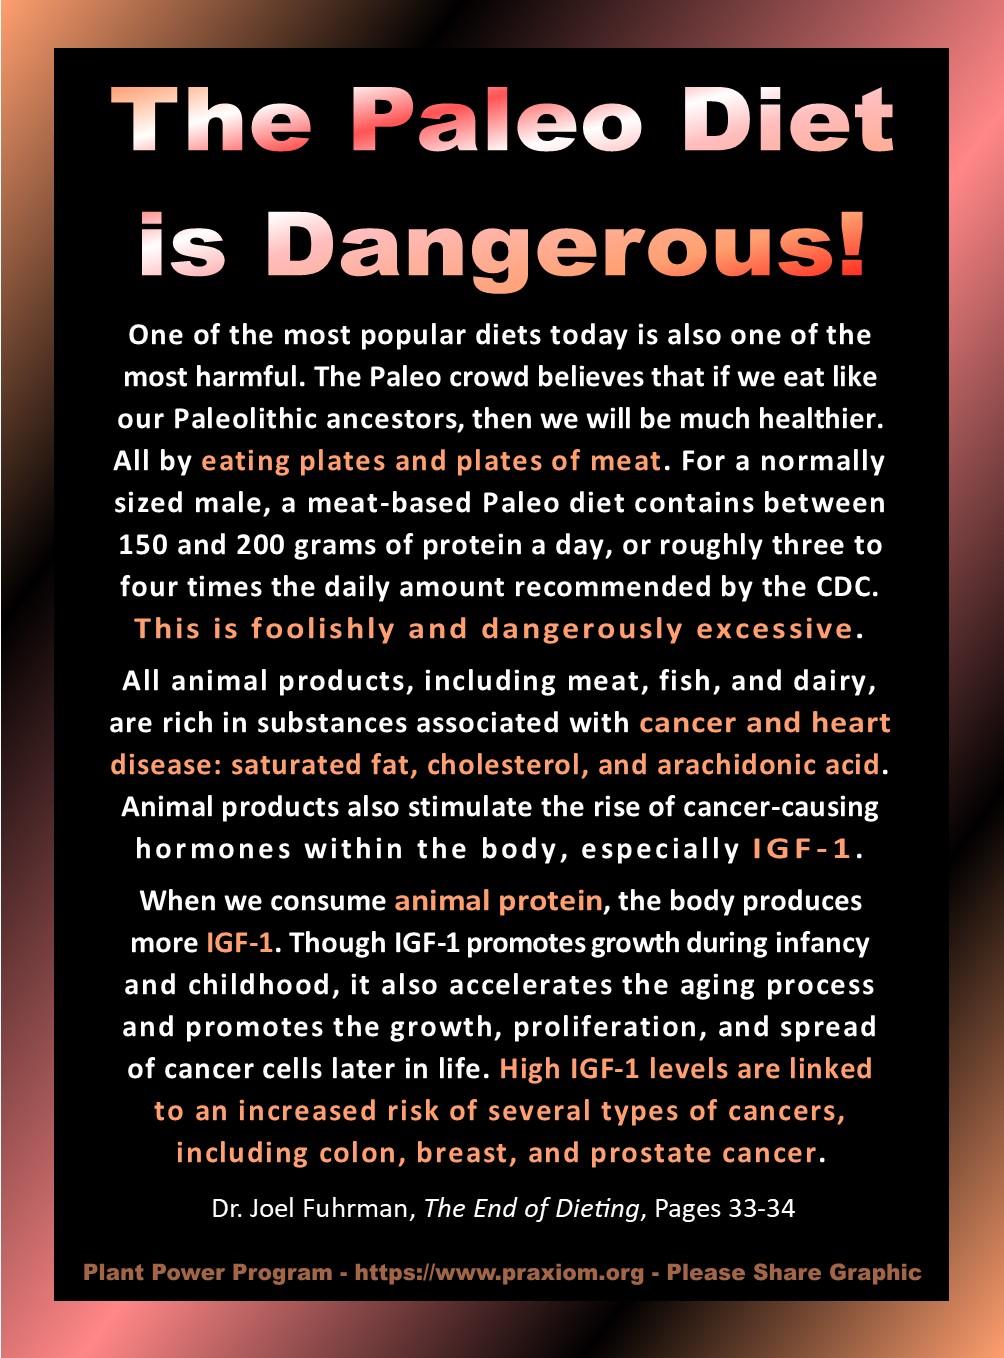 The Paleo Diet is Dangerous - Dr. Joel Fuhrman